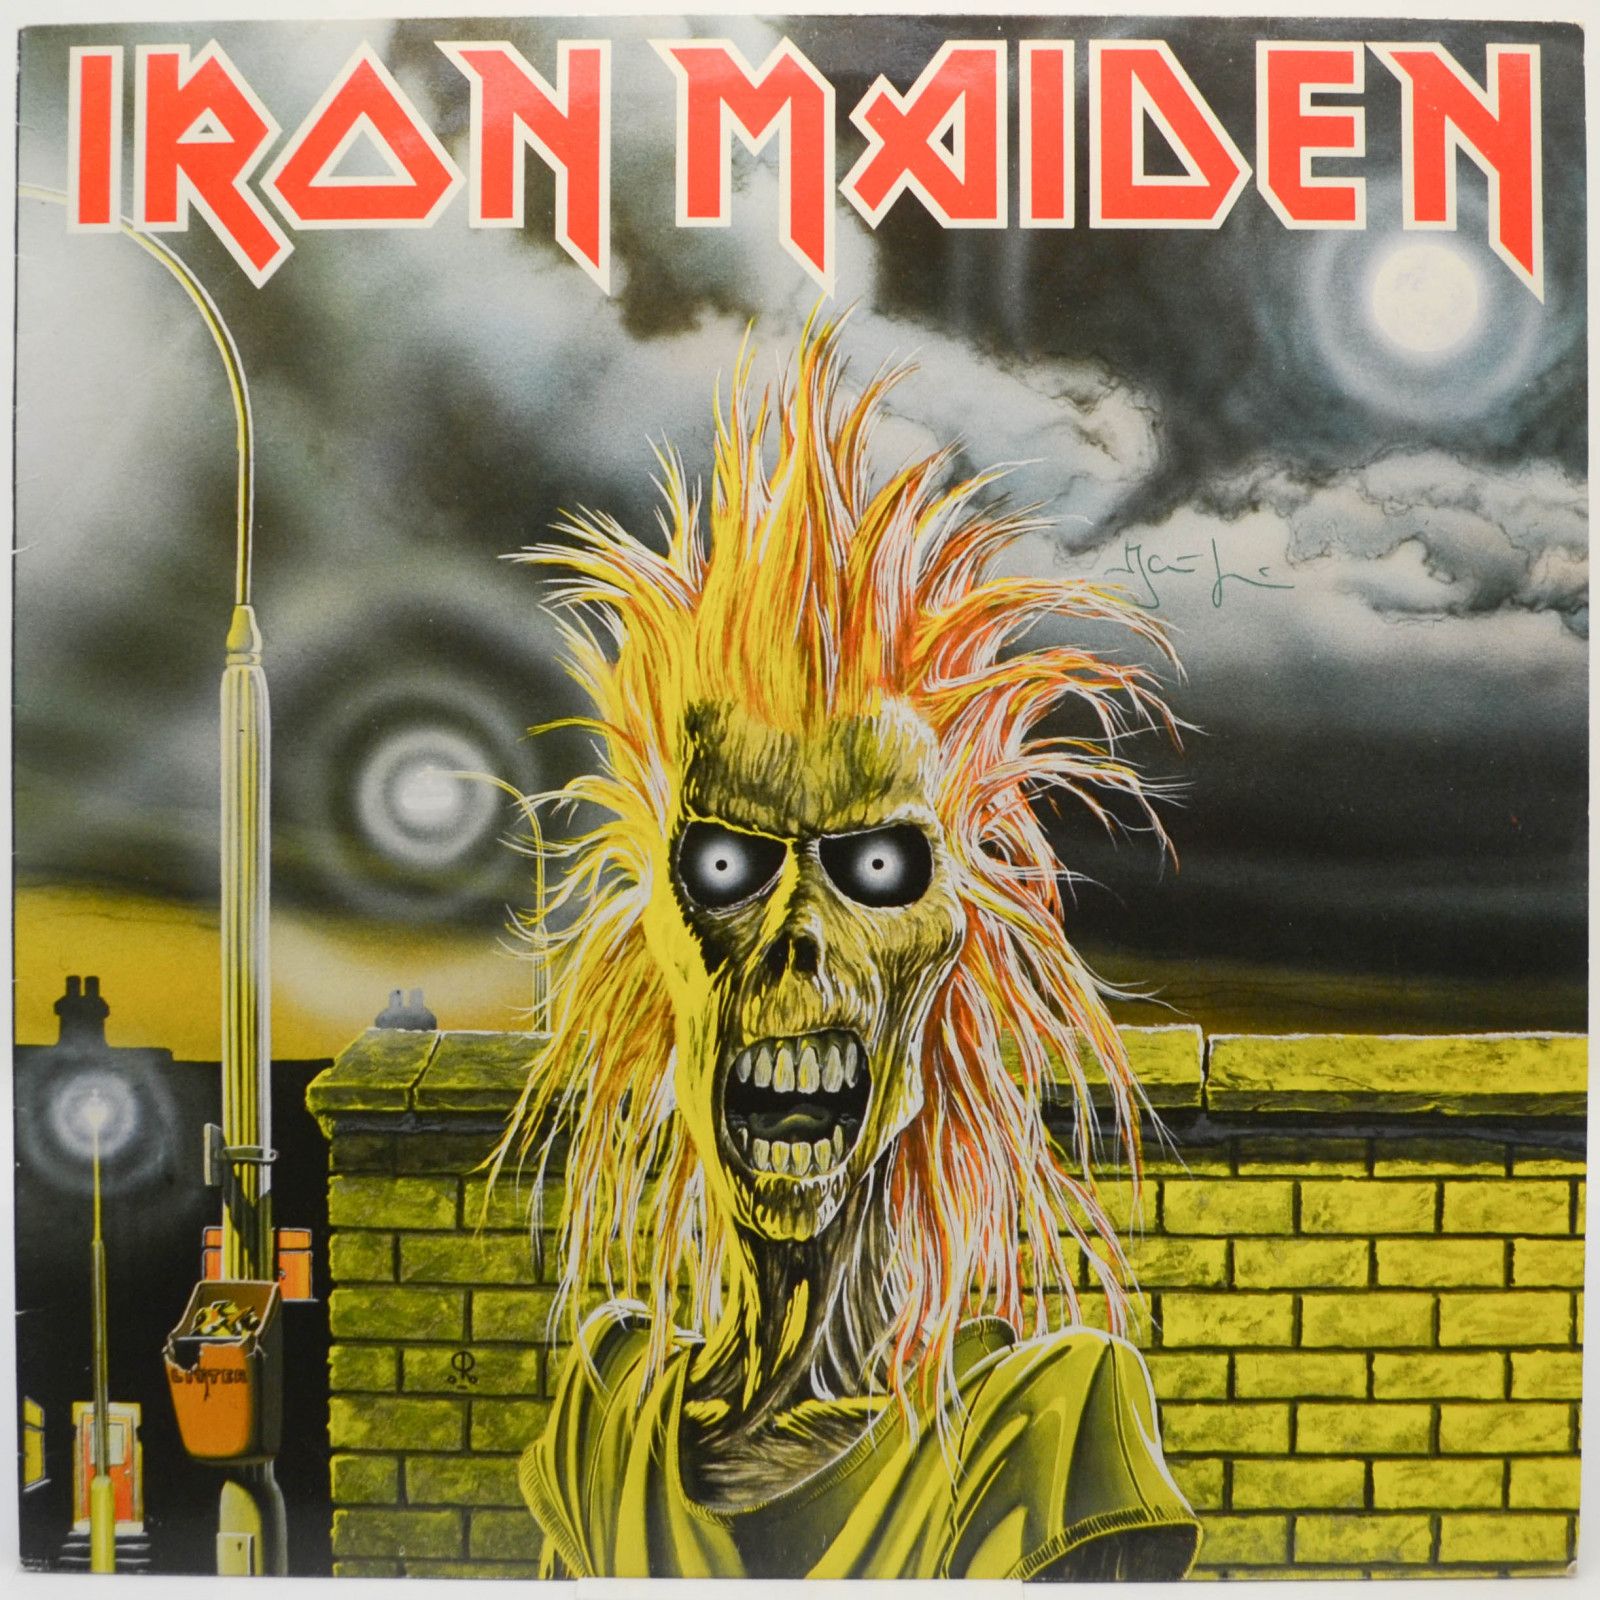 Iron Maiden — Iron Maiden, 1980